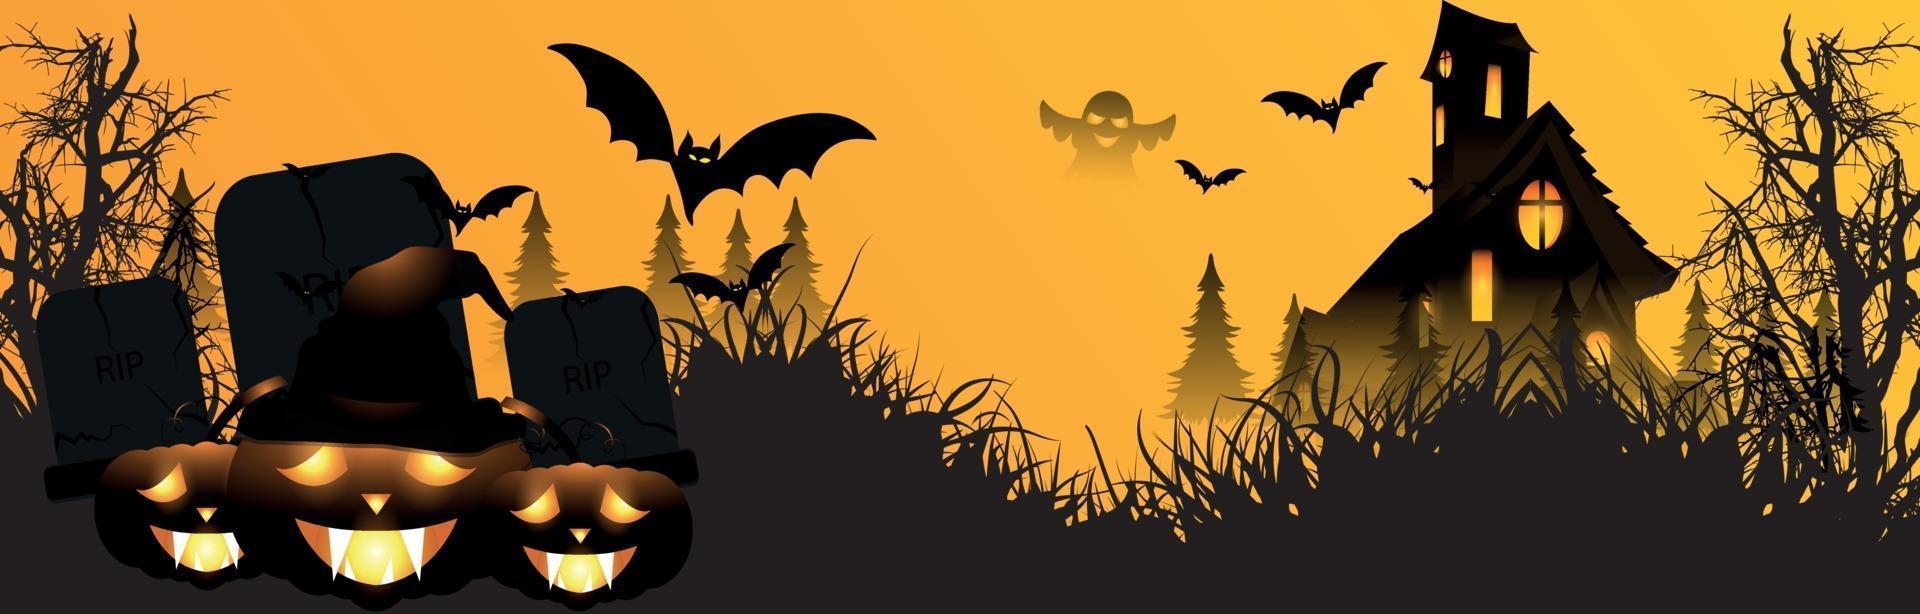 Banner de fiesta de feliz halloween con calabaza resplandeciente de la casa embrujada y murciélagos voladores vector